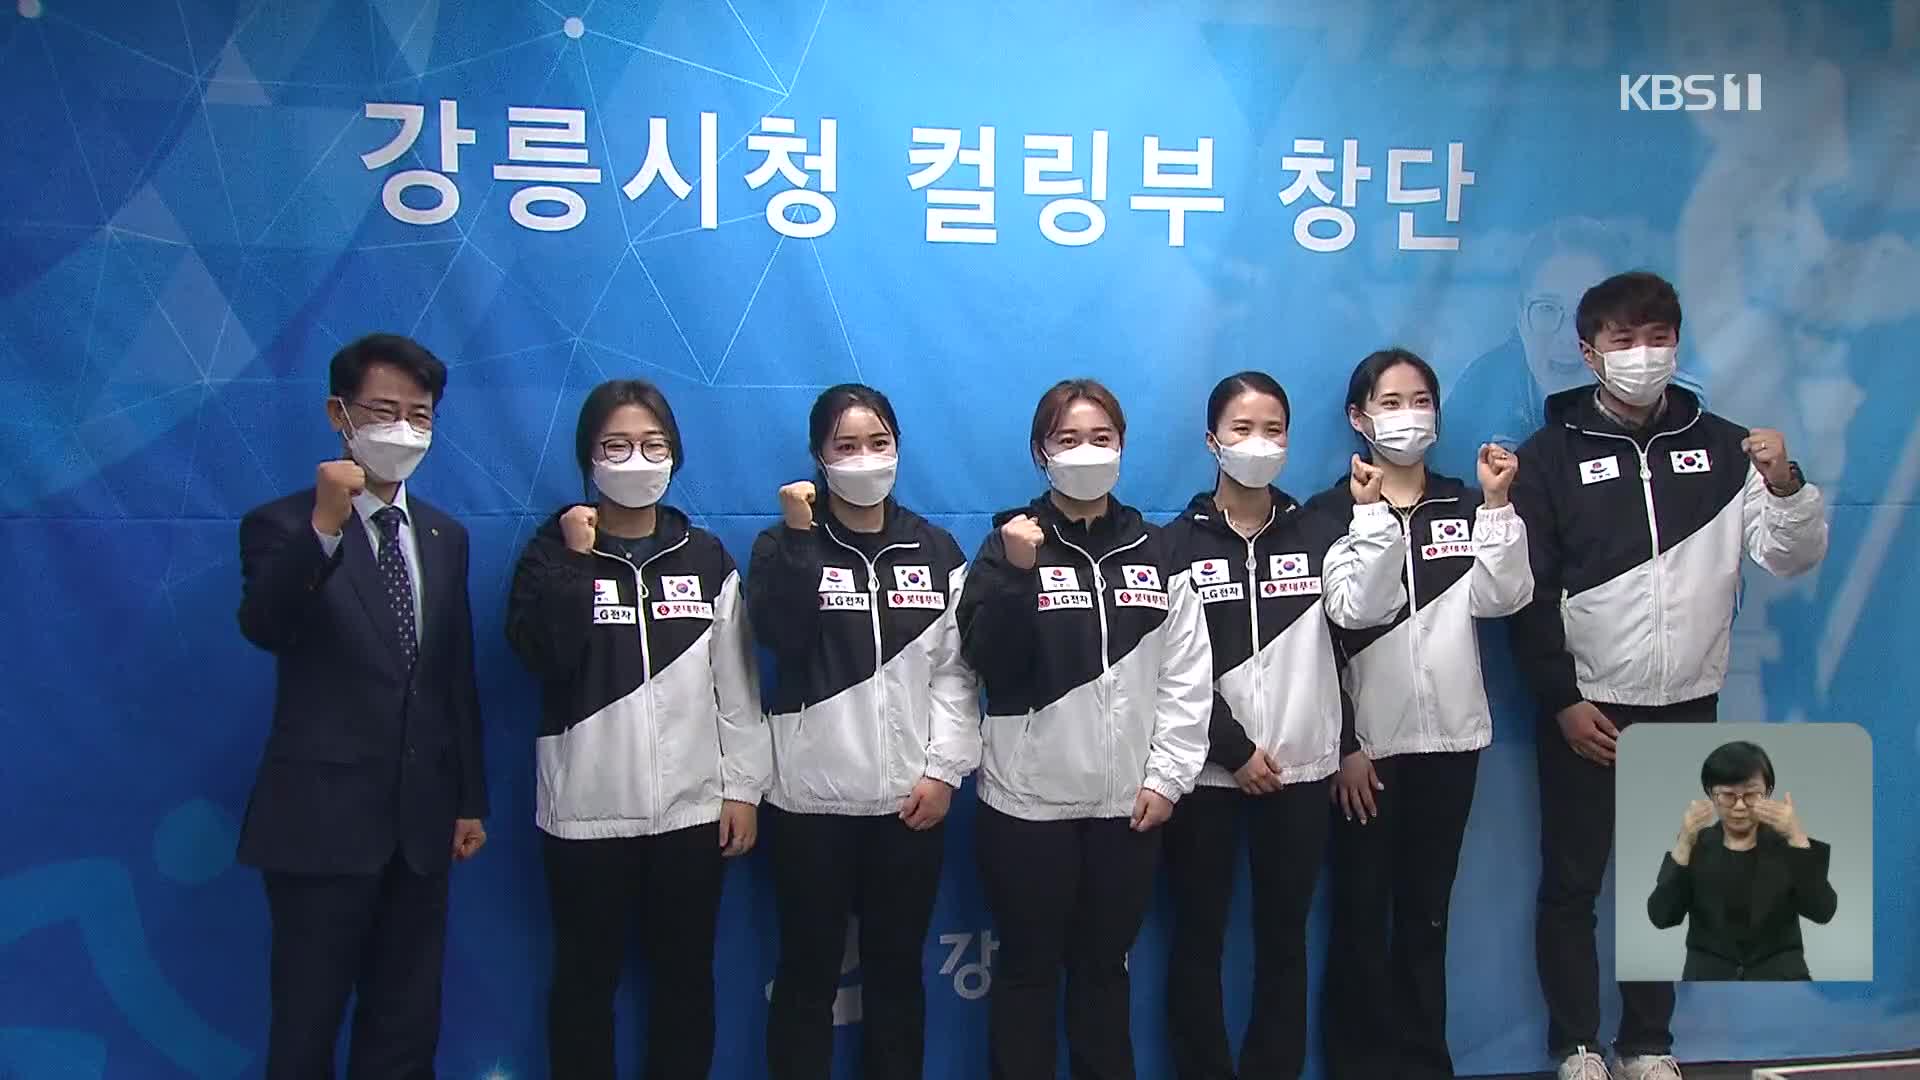 ‘팀 킴’ 강릉에 새 둥지, 베이징 올림픽 기대감 키워